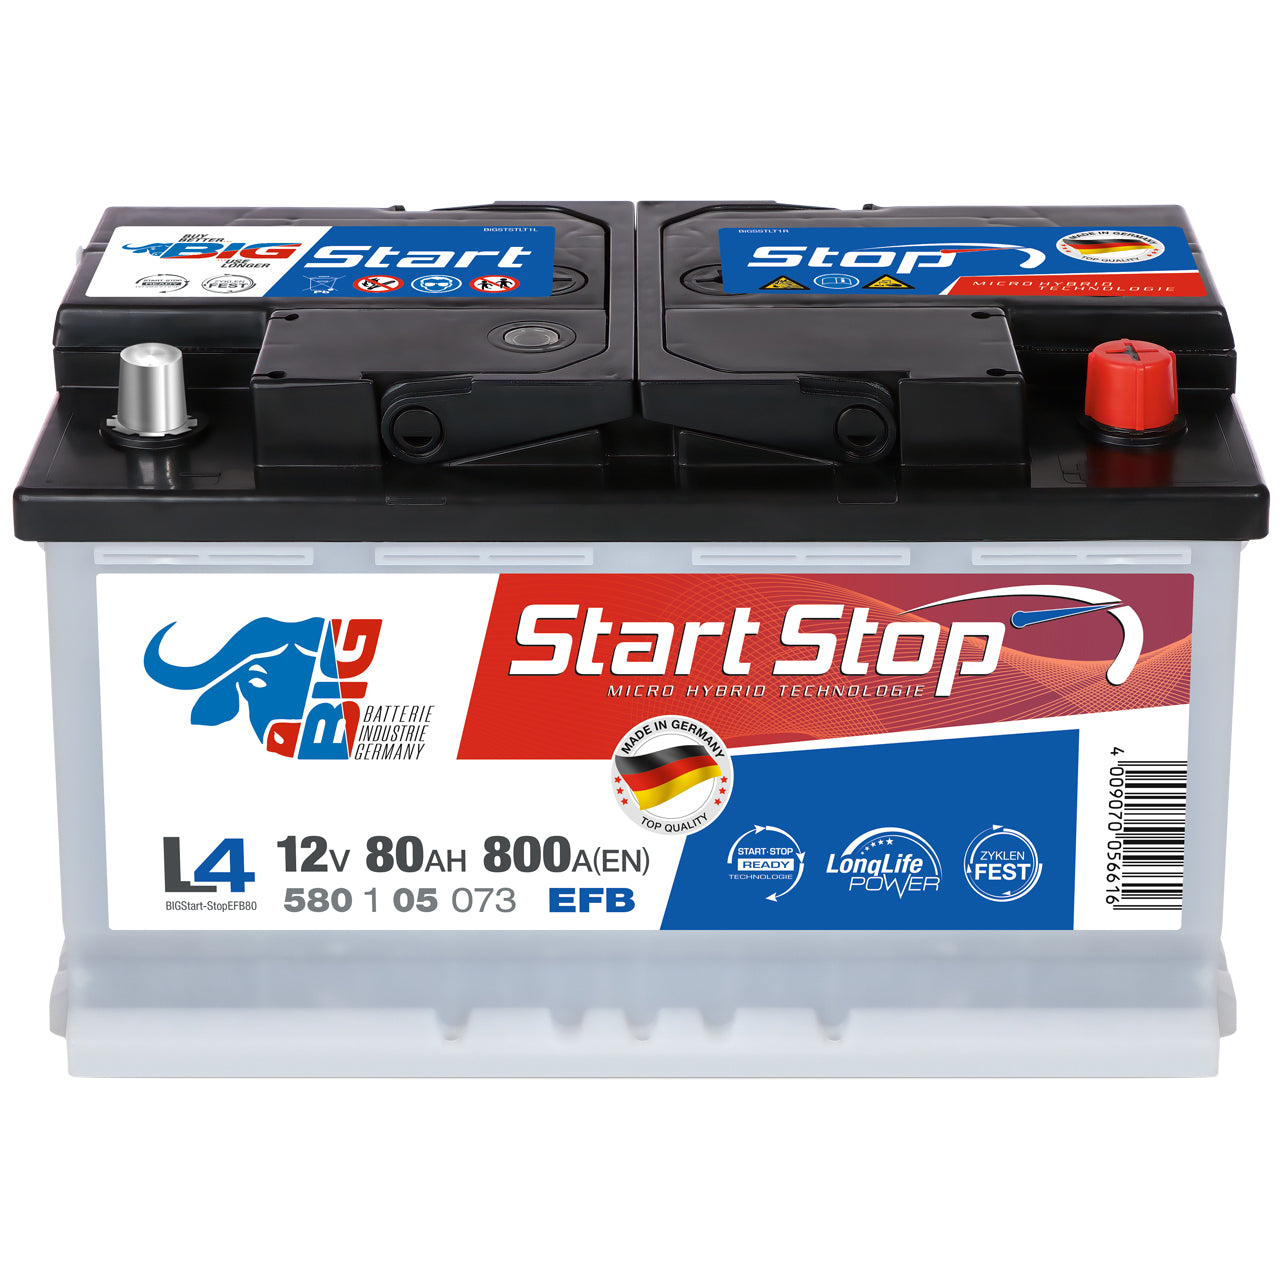 Batterie 800A, 95Ah, EFB-Batterie Start-Stop Art. 2800012003280 - Marke:  Continental Jetzt günstig online kaufen